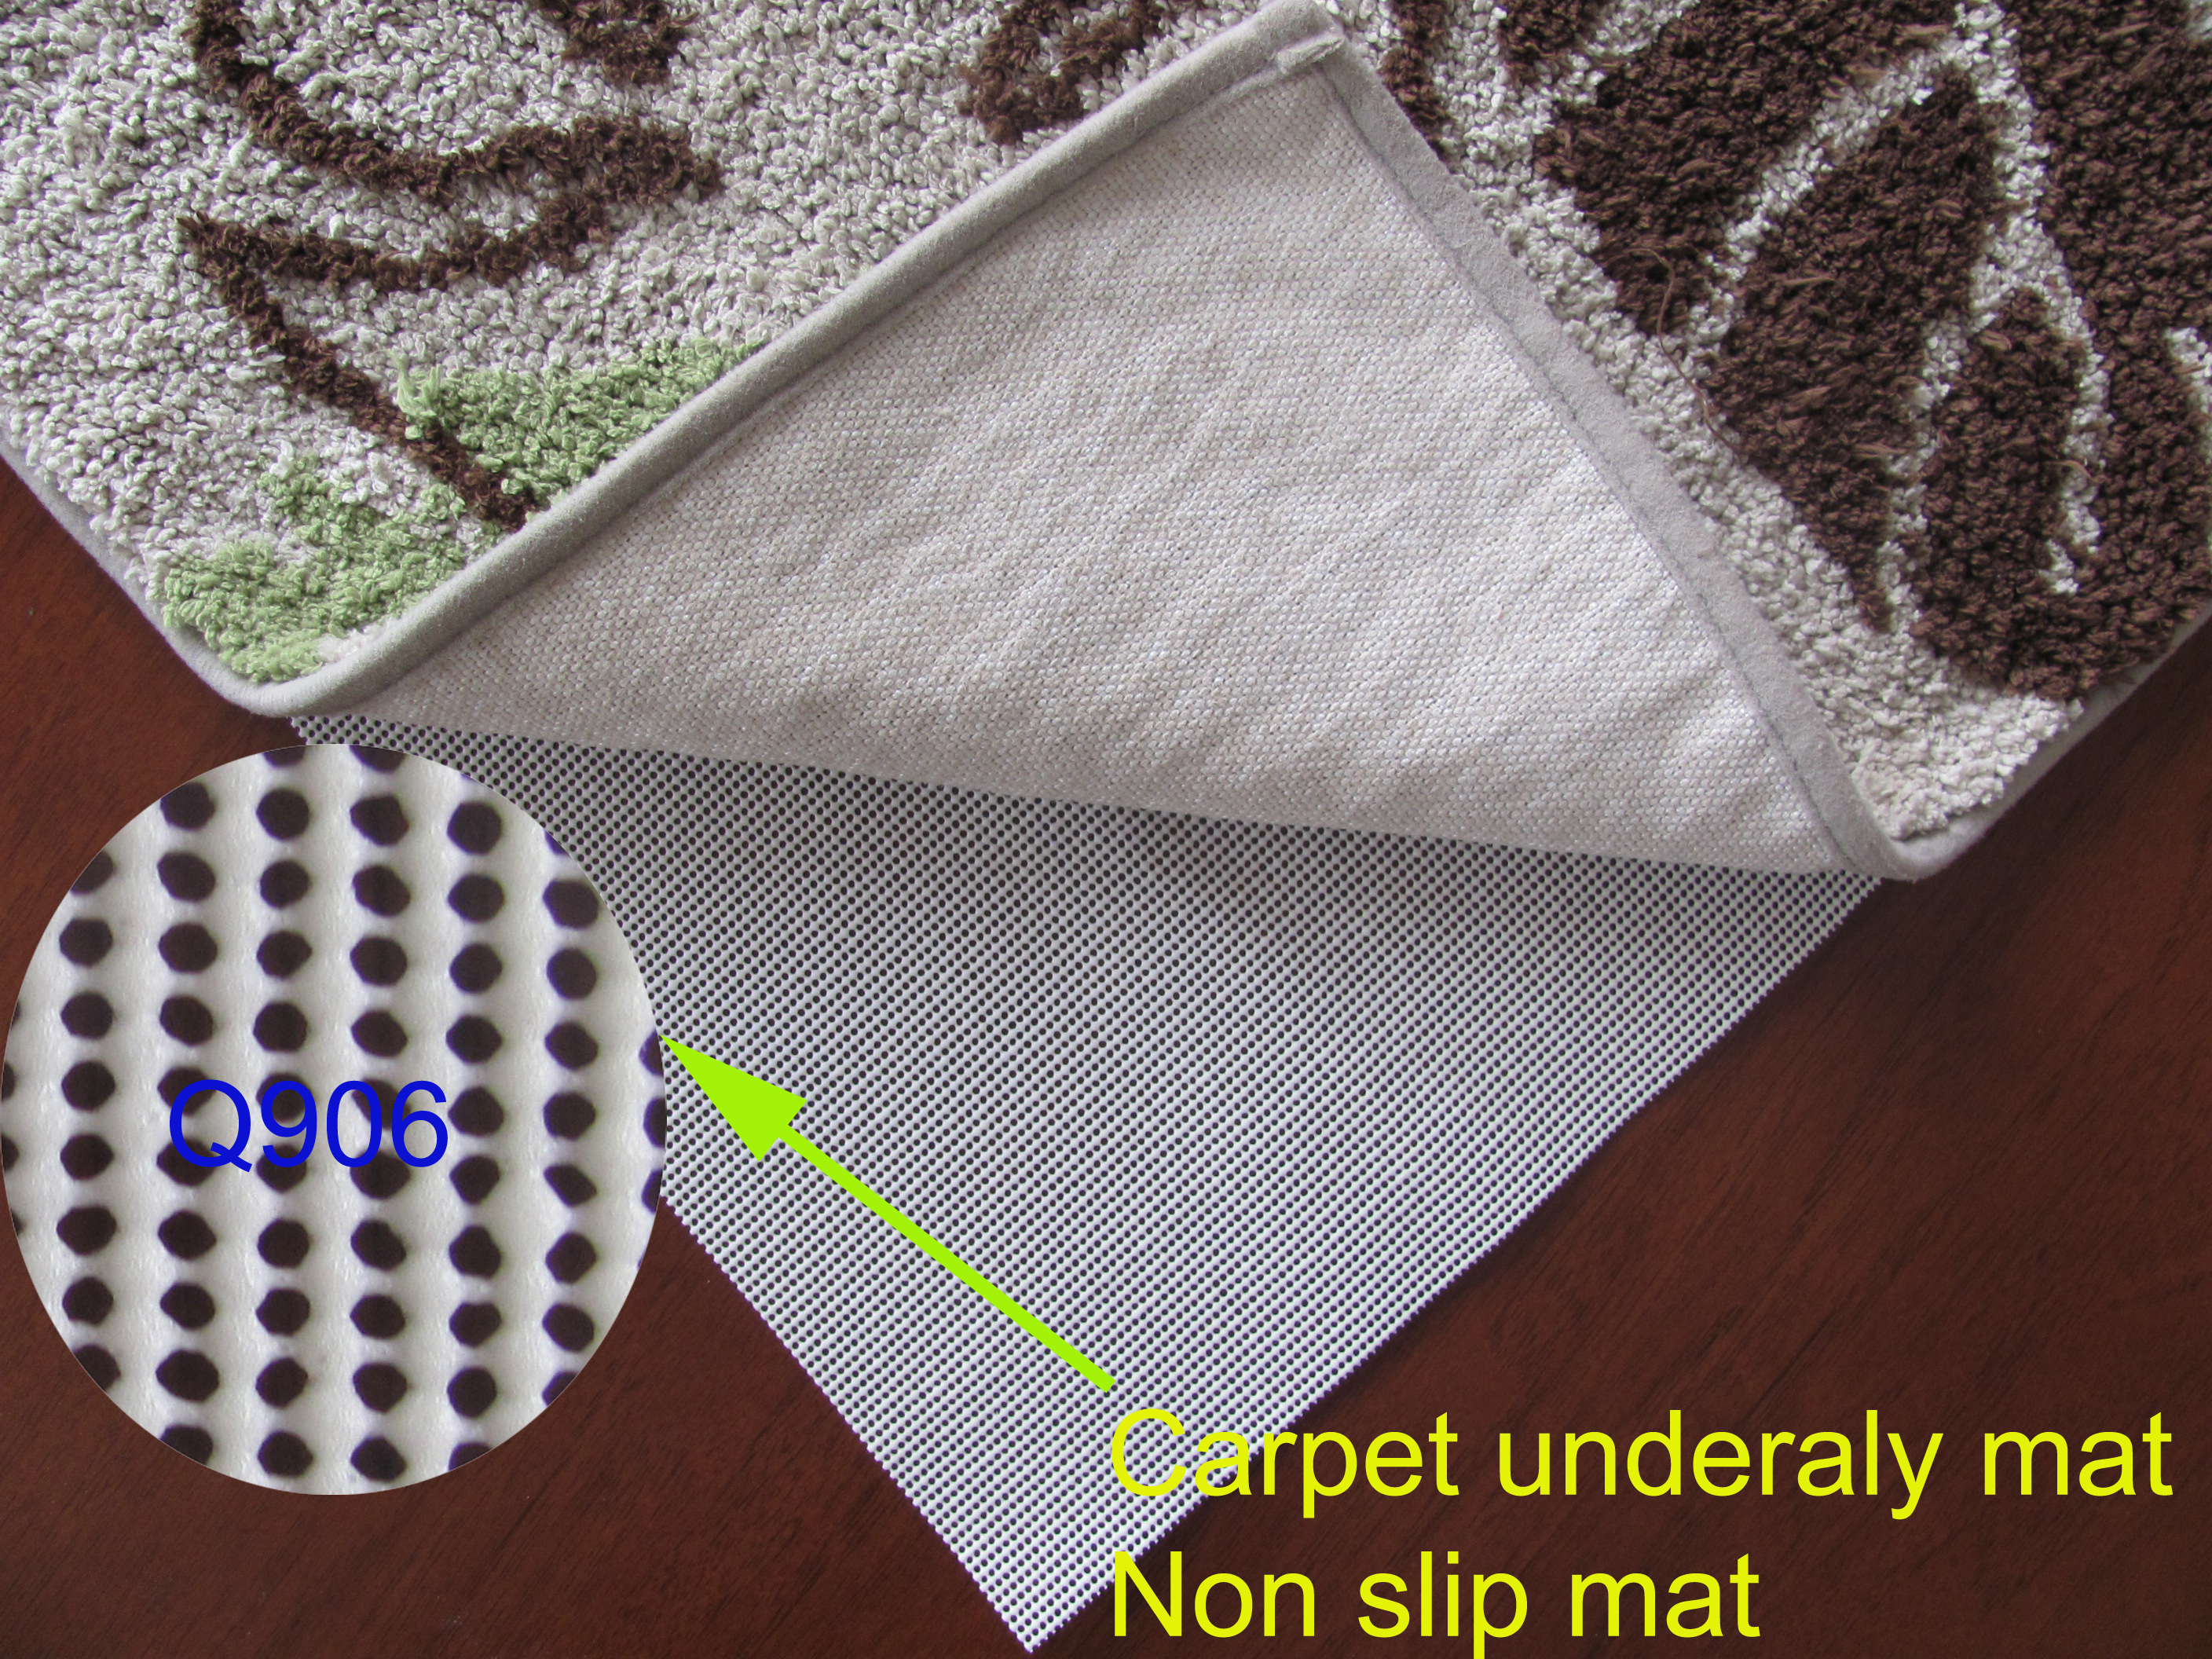  Base de alfombra antideslizante redonda con orificio pequeño, duradera y resistente al desgaste